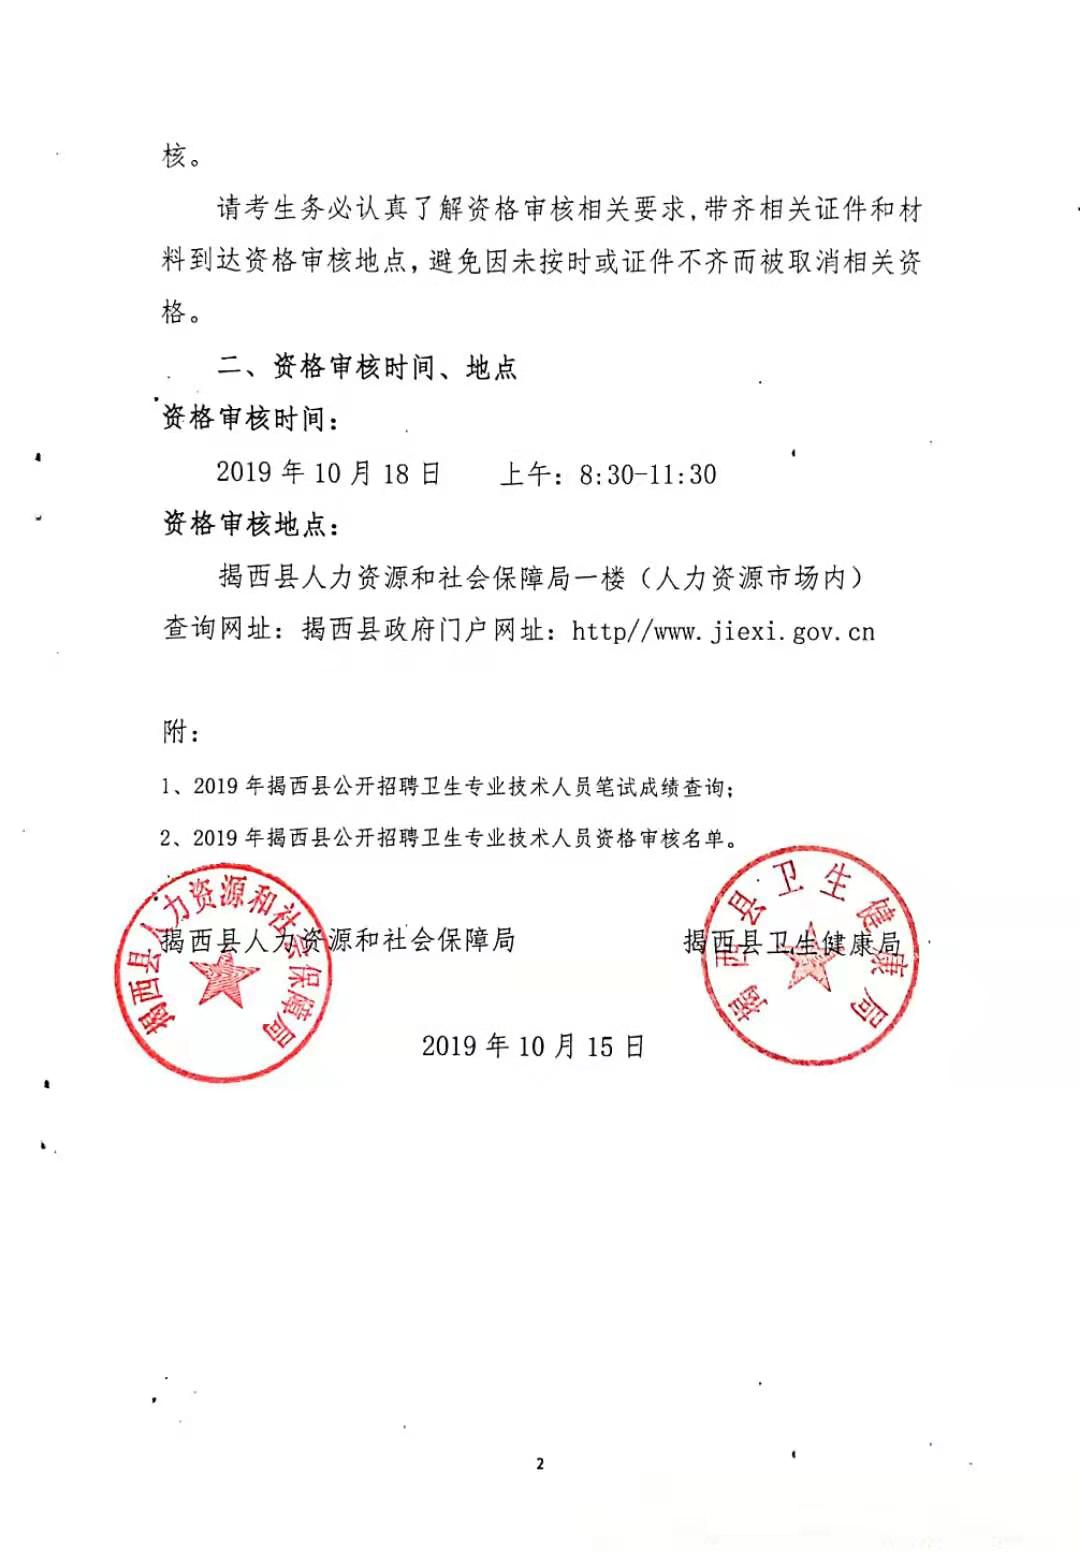 关于公布2019年揭西县公开招聘卫生专业技术人员笔试成绩及资格审核的公告2.jpg